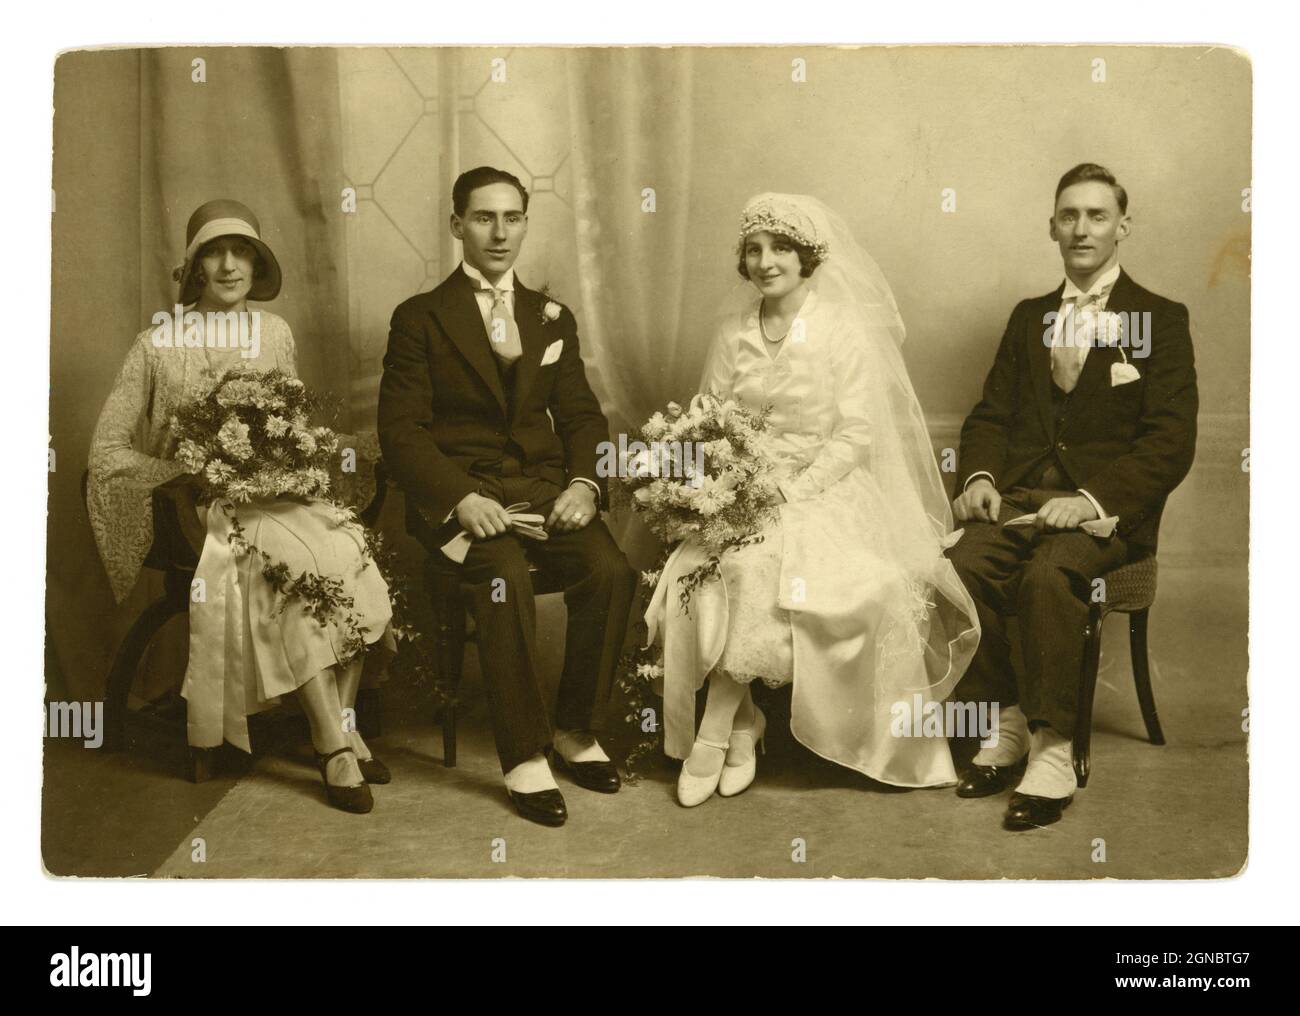 Impresionante original clásico de 1920, época de flapper, foto de retrato  de grupo de boda, hermosa novia con un velo largo, impresionante tocado.  sentado al lado del novio y el mejor hombre